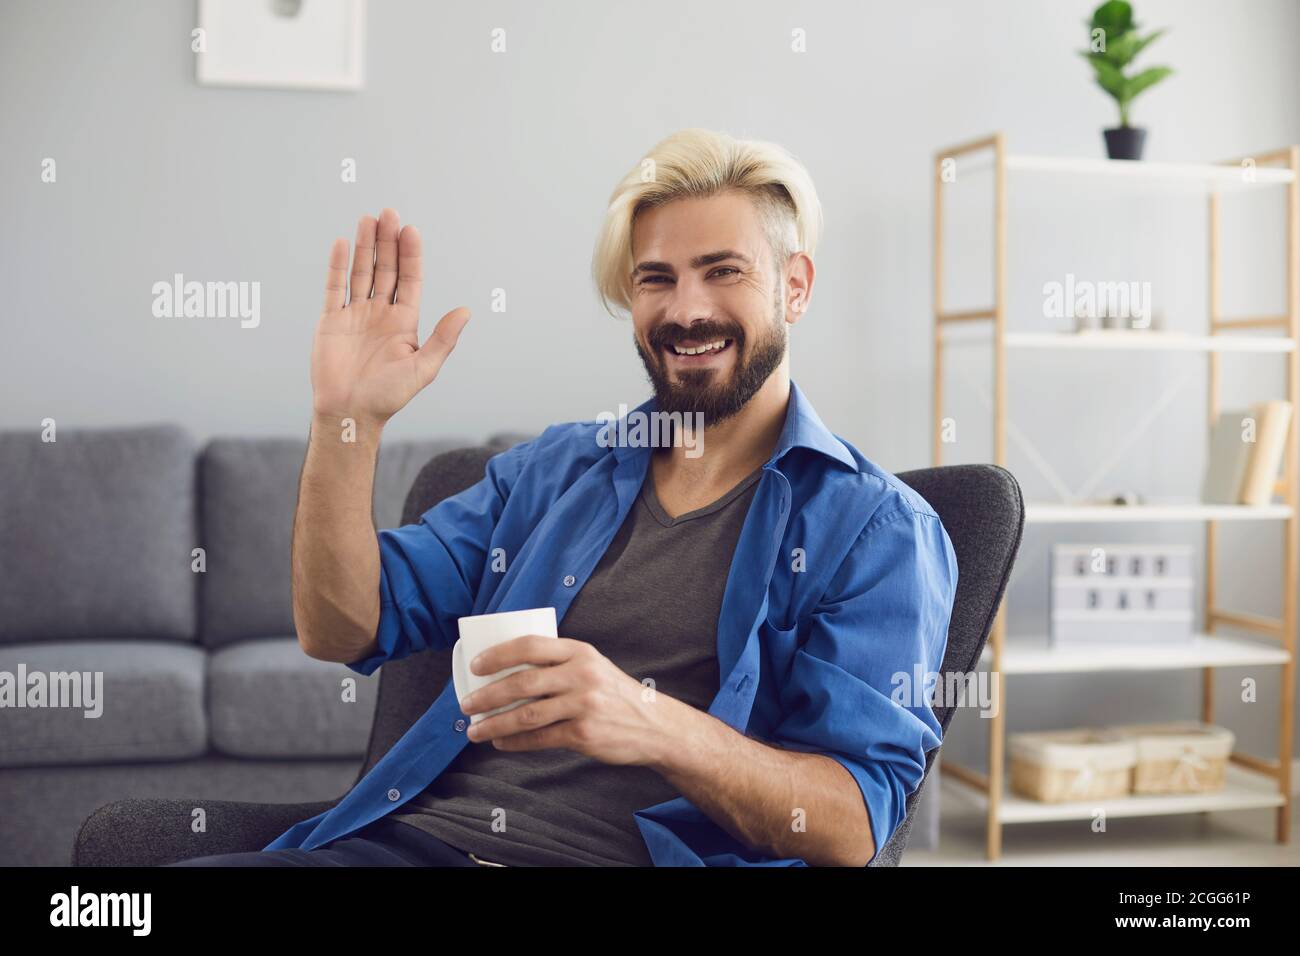 Lächelnder Mann, der zu Hause sitzt und jemanden mit der Hand begrüßt Online-Suche auf Web-Kamera Stockfoto